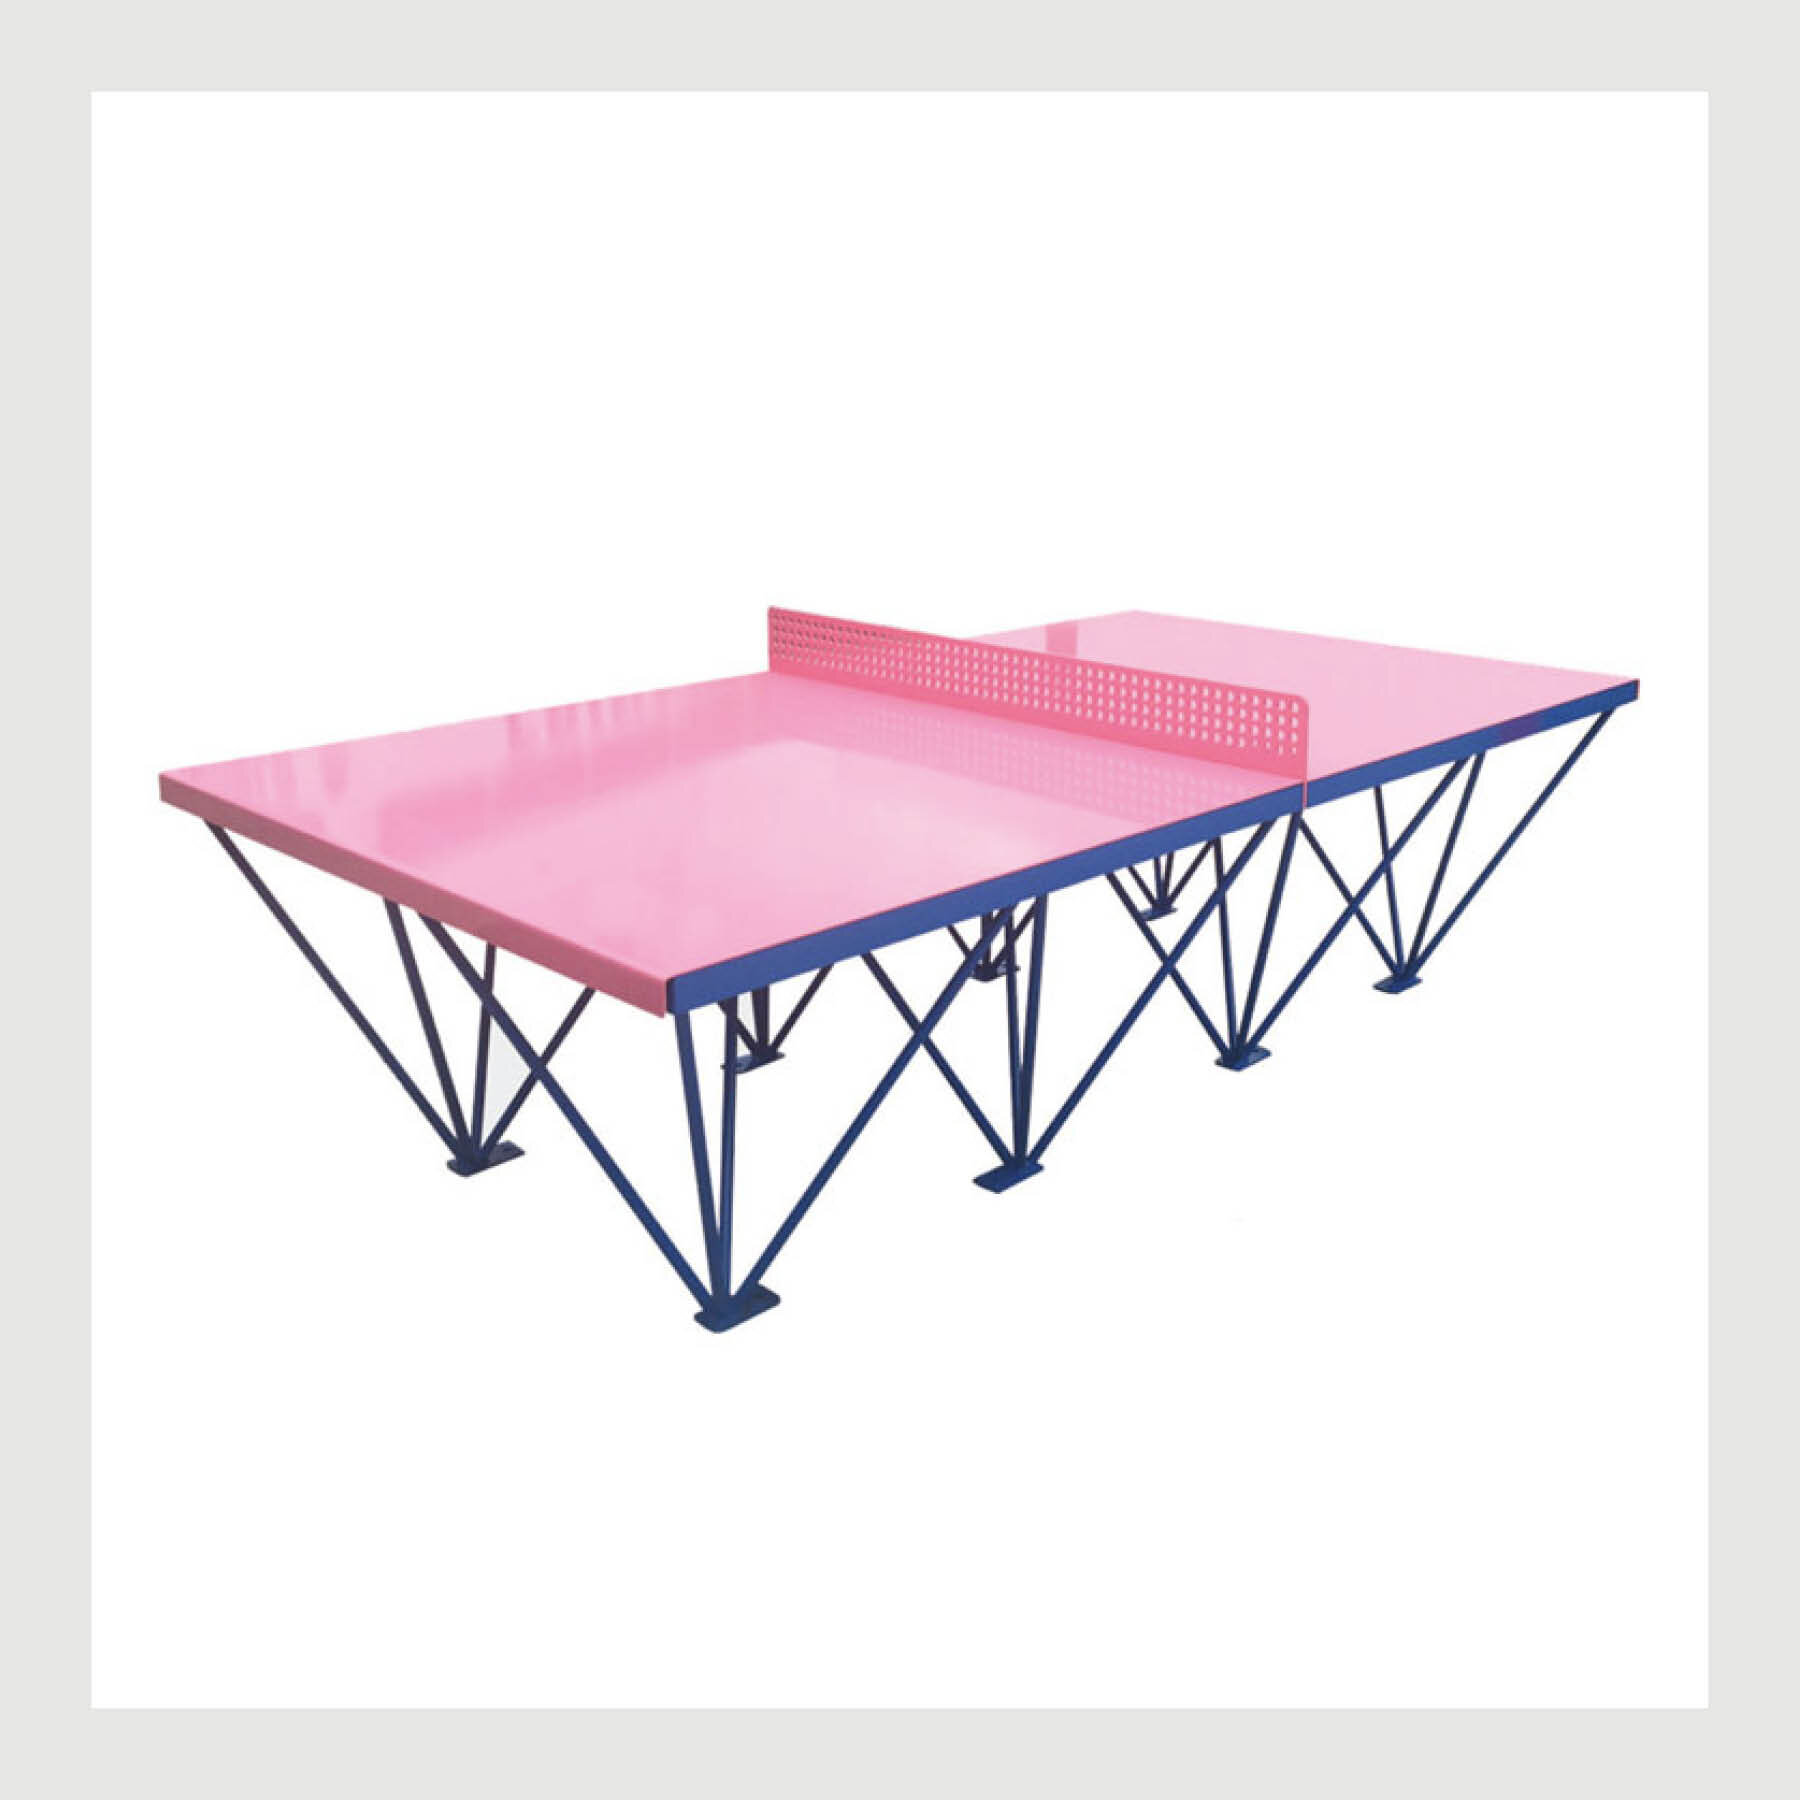 Table de ping-pong extérieure - Parcs et espaces verts - AtlasBarz